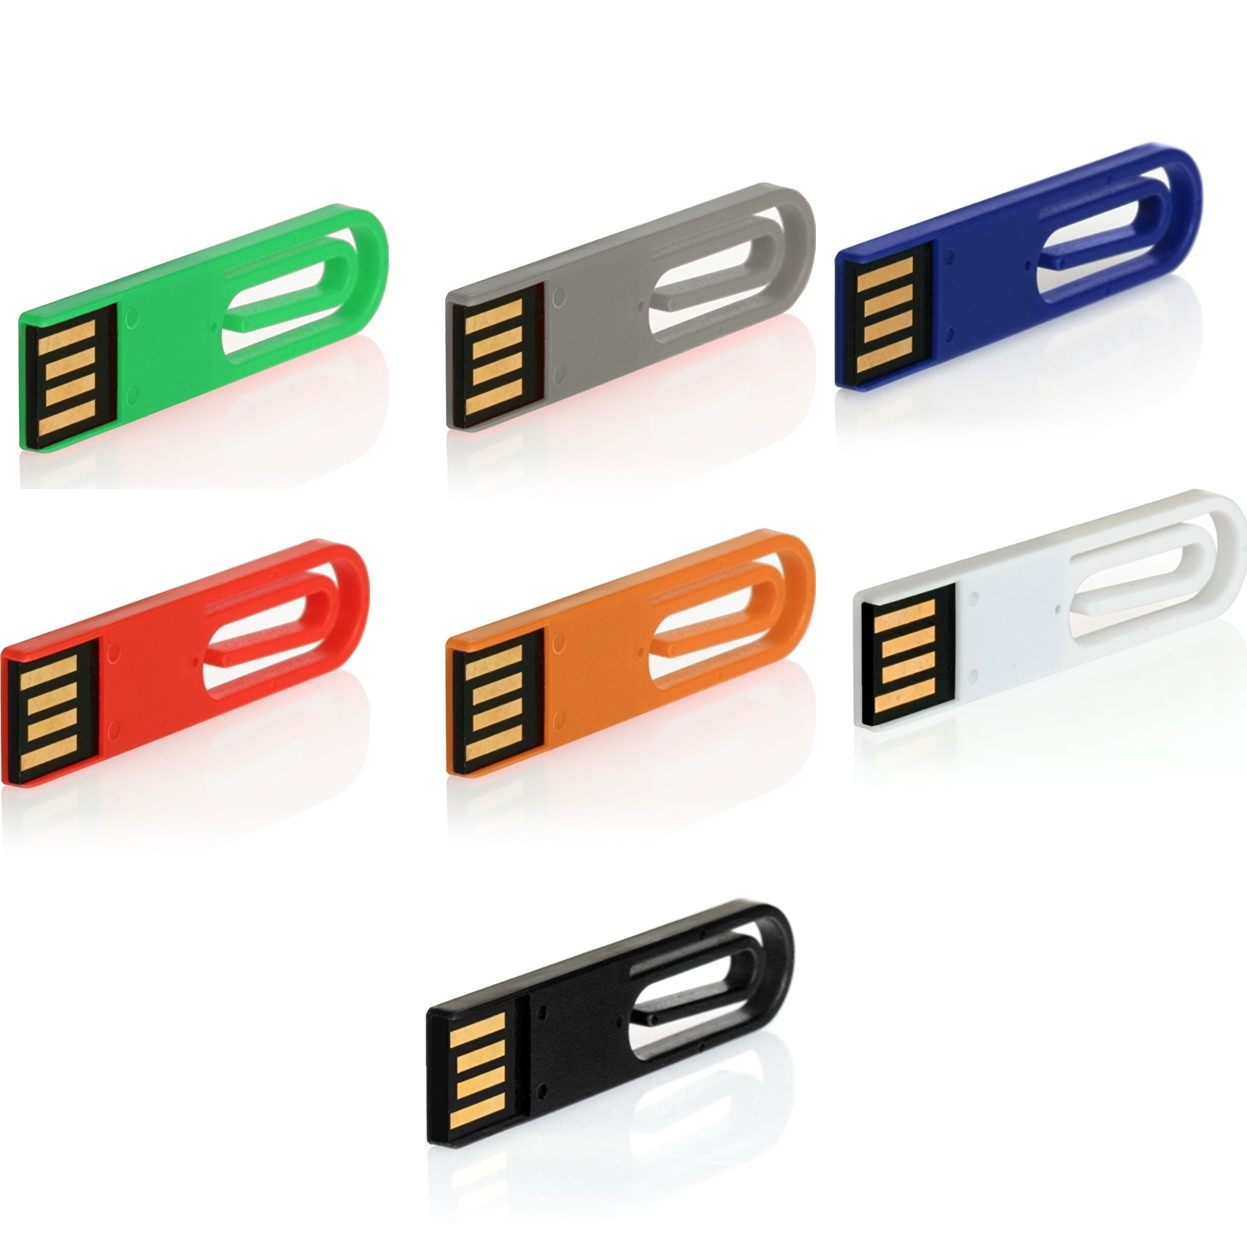 USB GERMANY eCLIP GB) 16 USB-Stick (Grün, ®